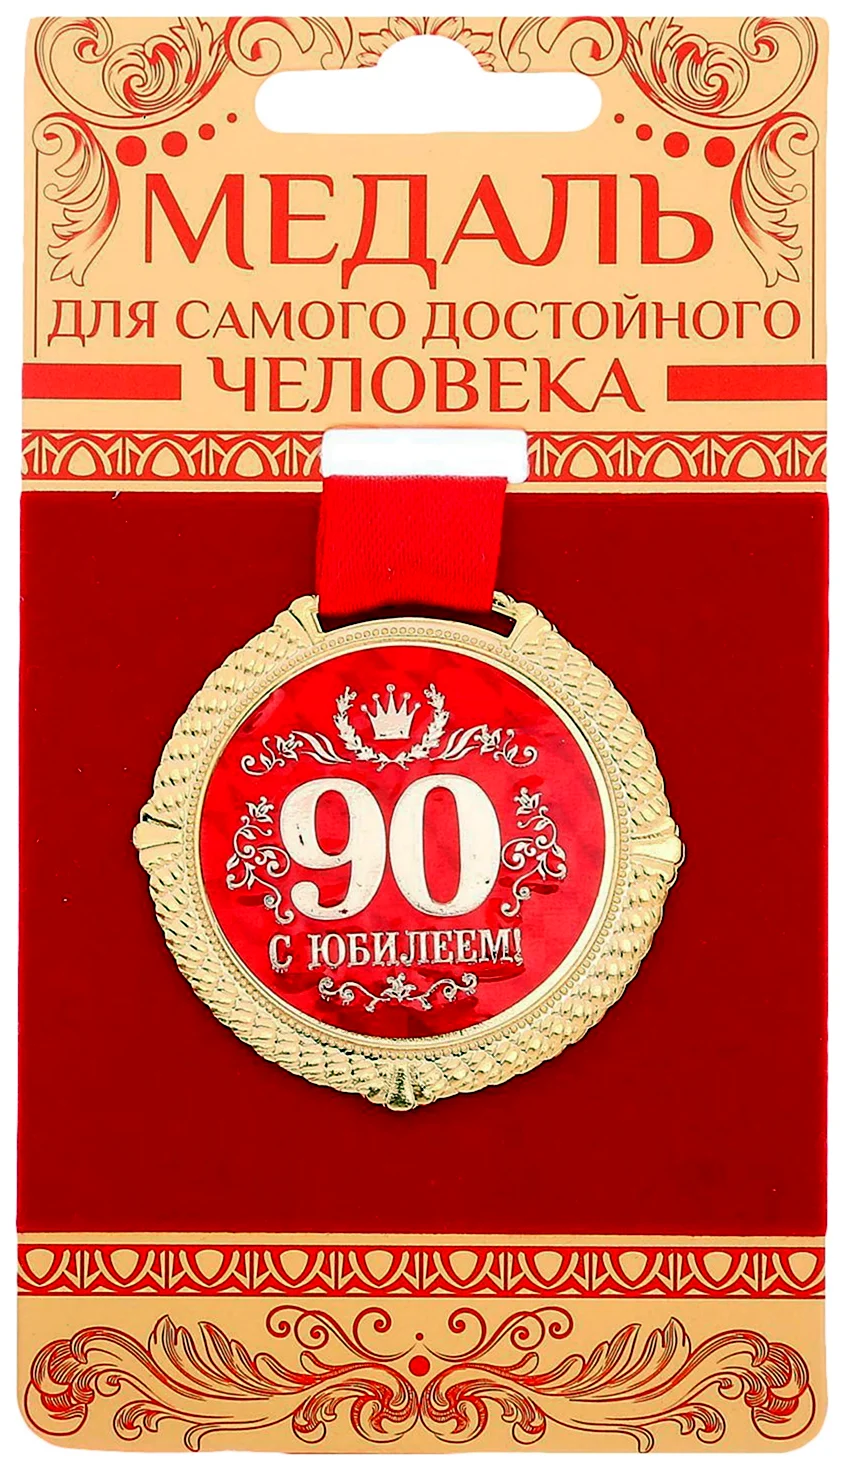 Медаль с юбилеем 80 лет. Открытка для мужчины